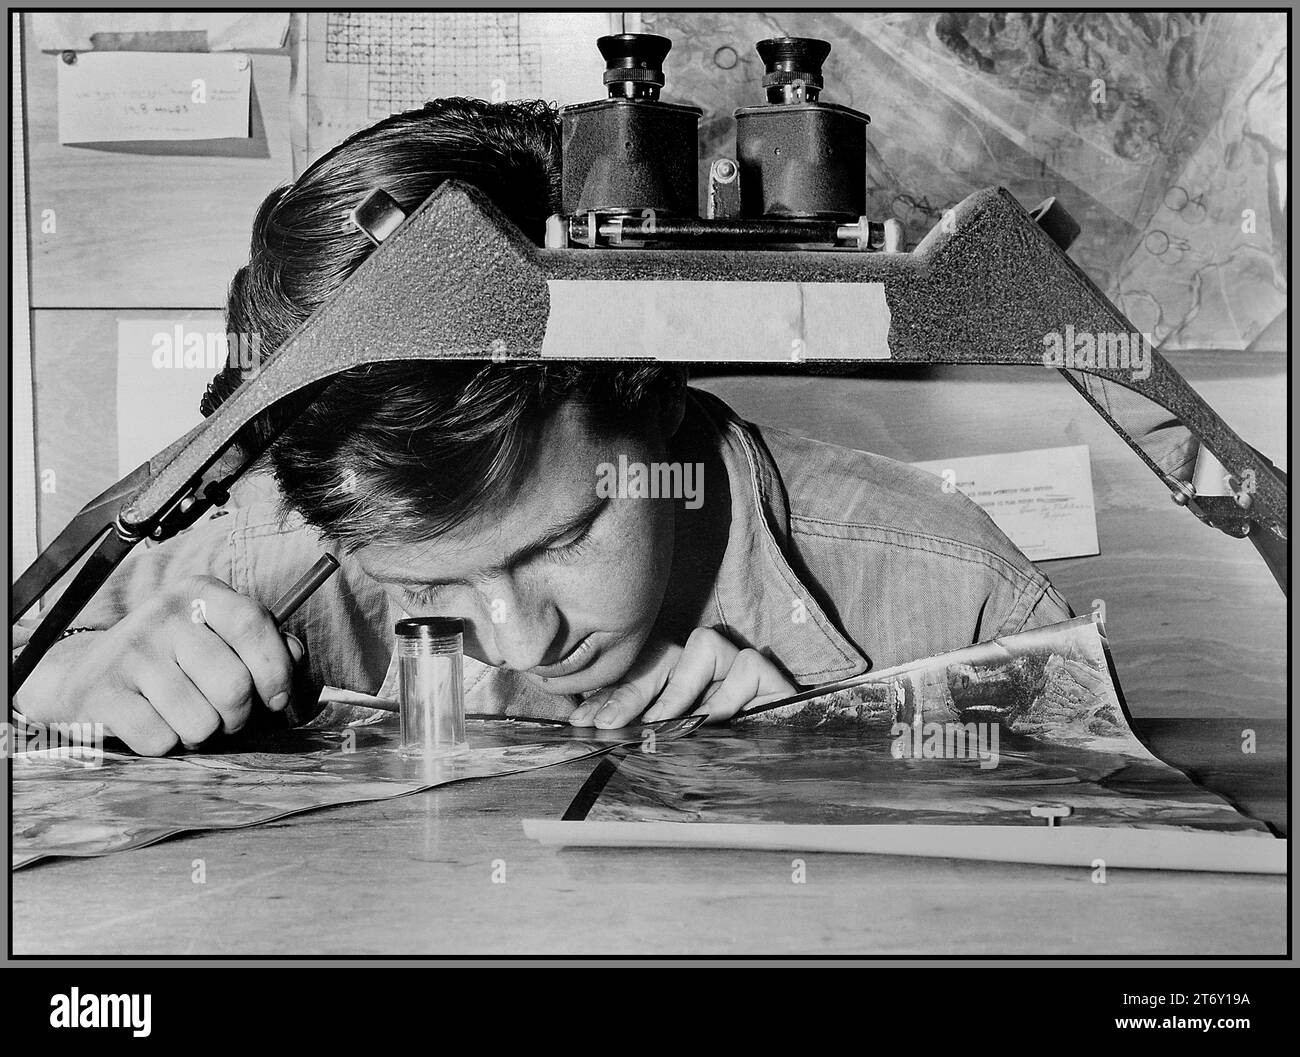 GUERRE DE CORÉE CINQUIÈME ARMÉE DE L'AIR renseignement de reconnaissance aérienne avec une photographie d'une position de canon communiste devant lui, le sergent James E. Kindseth regarde attentivement à travers sa loupe. 1950 Corée du Sud Banque D'Images